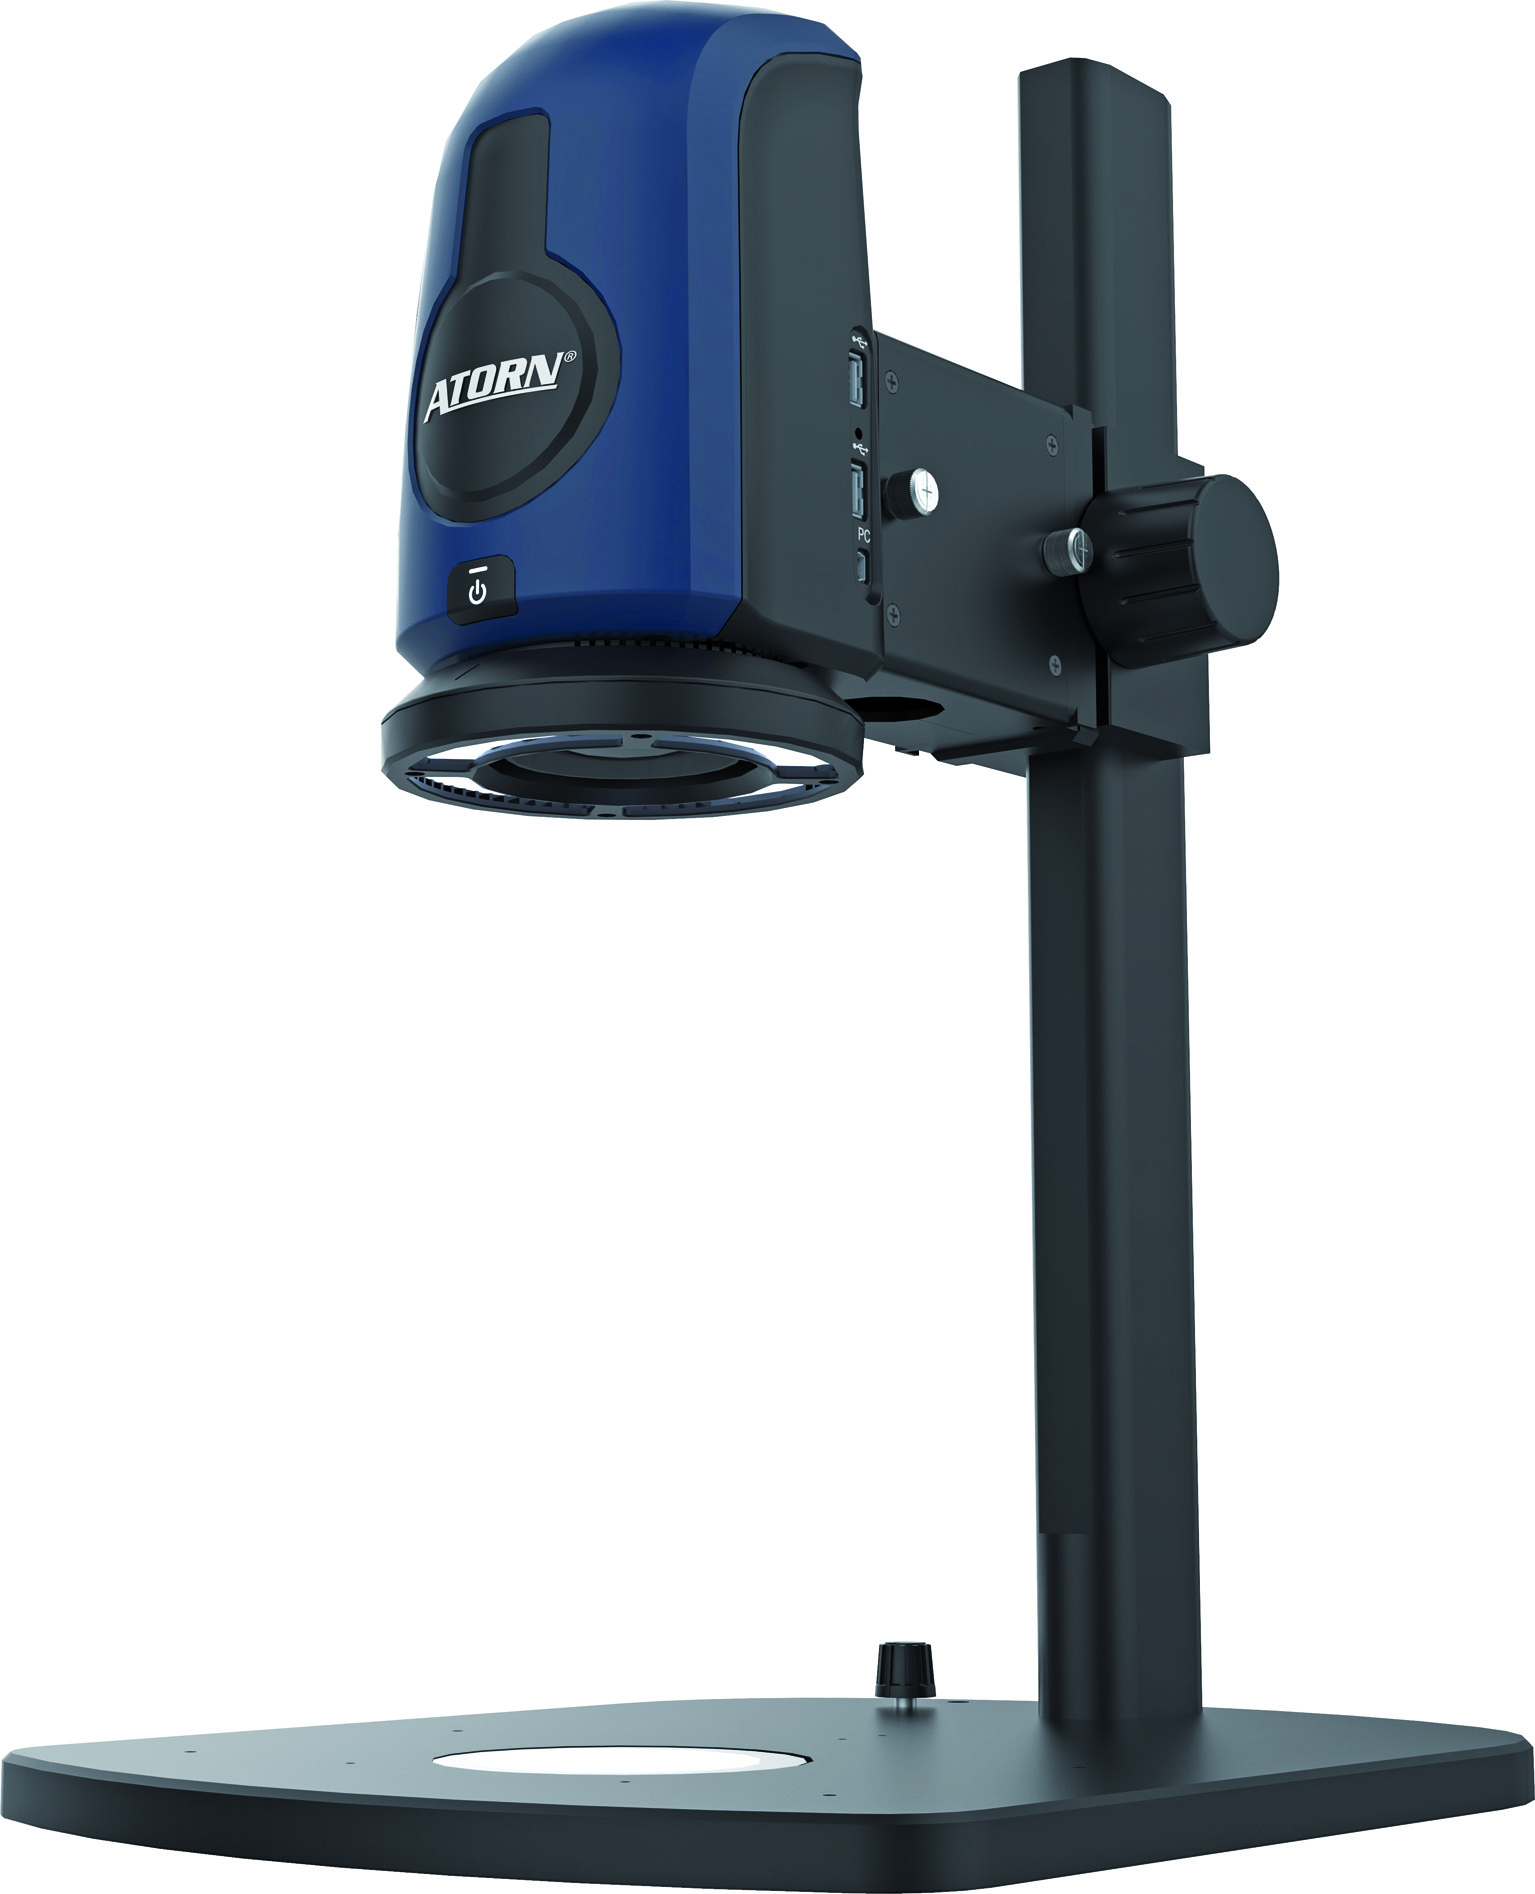 Ultrascharf und einfach – das neue Digital-Mikroskop